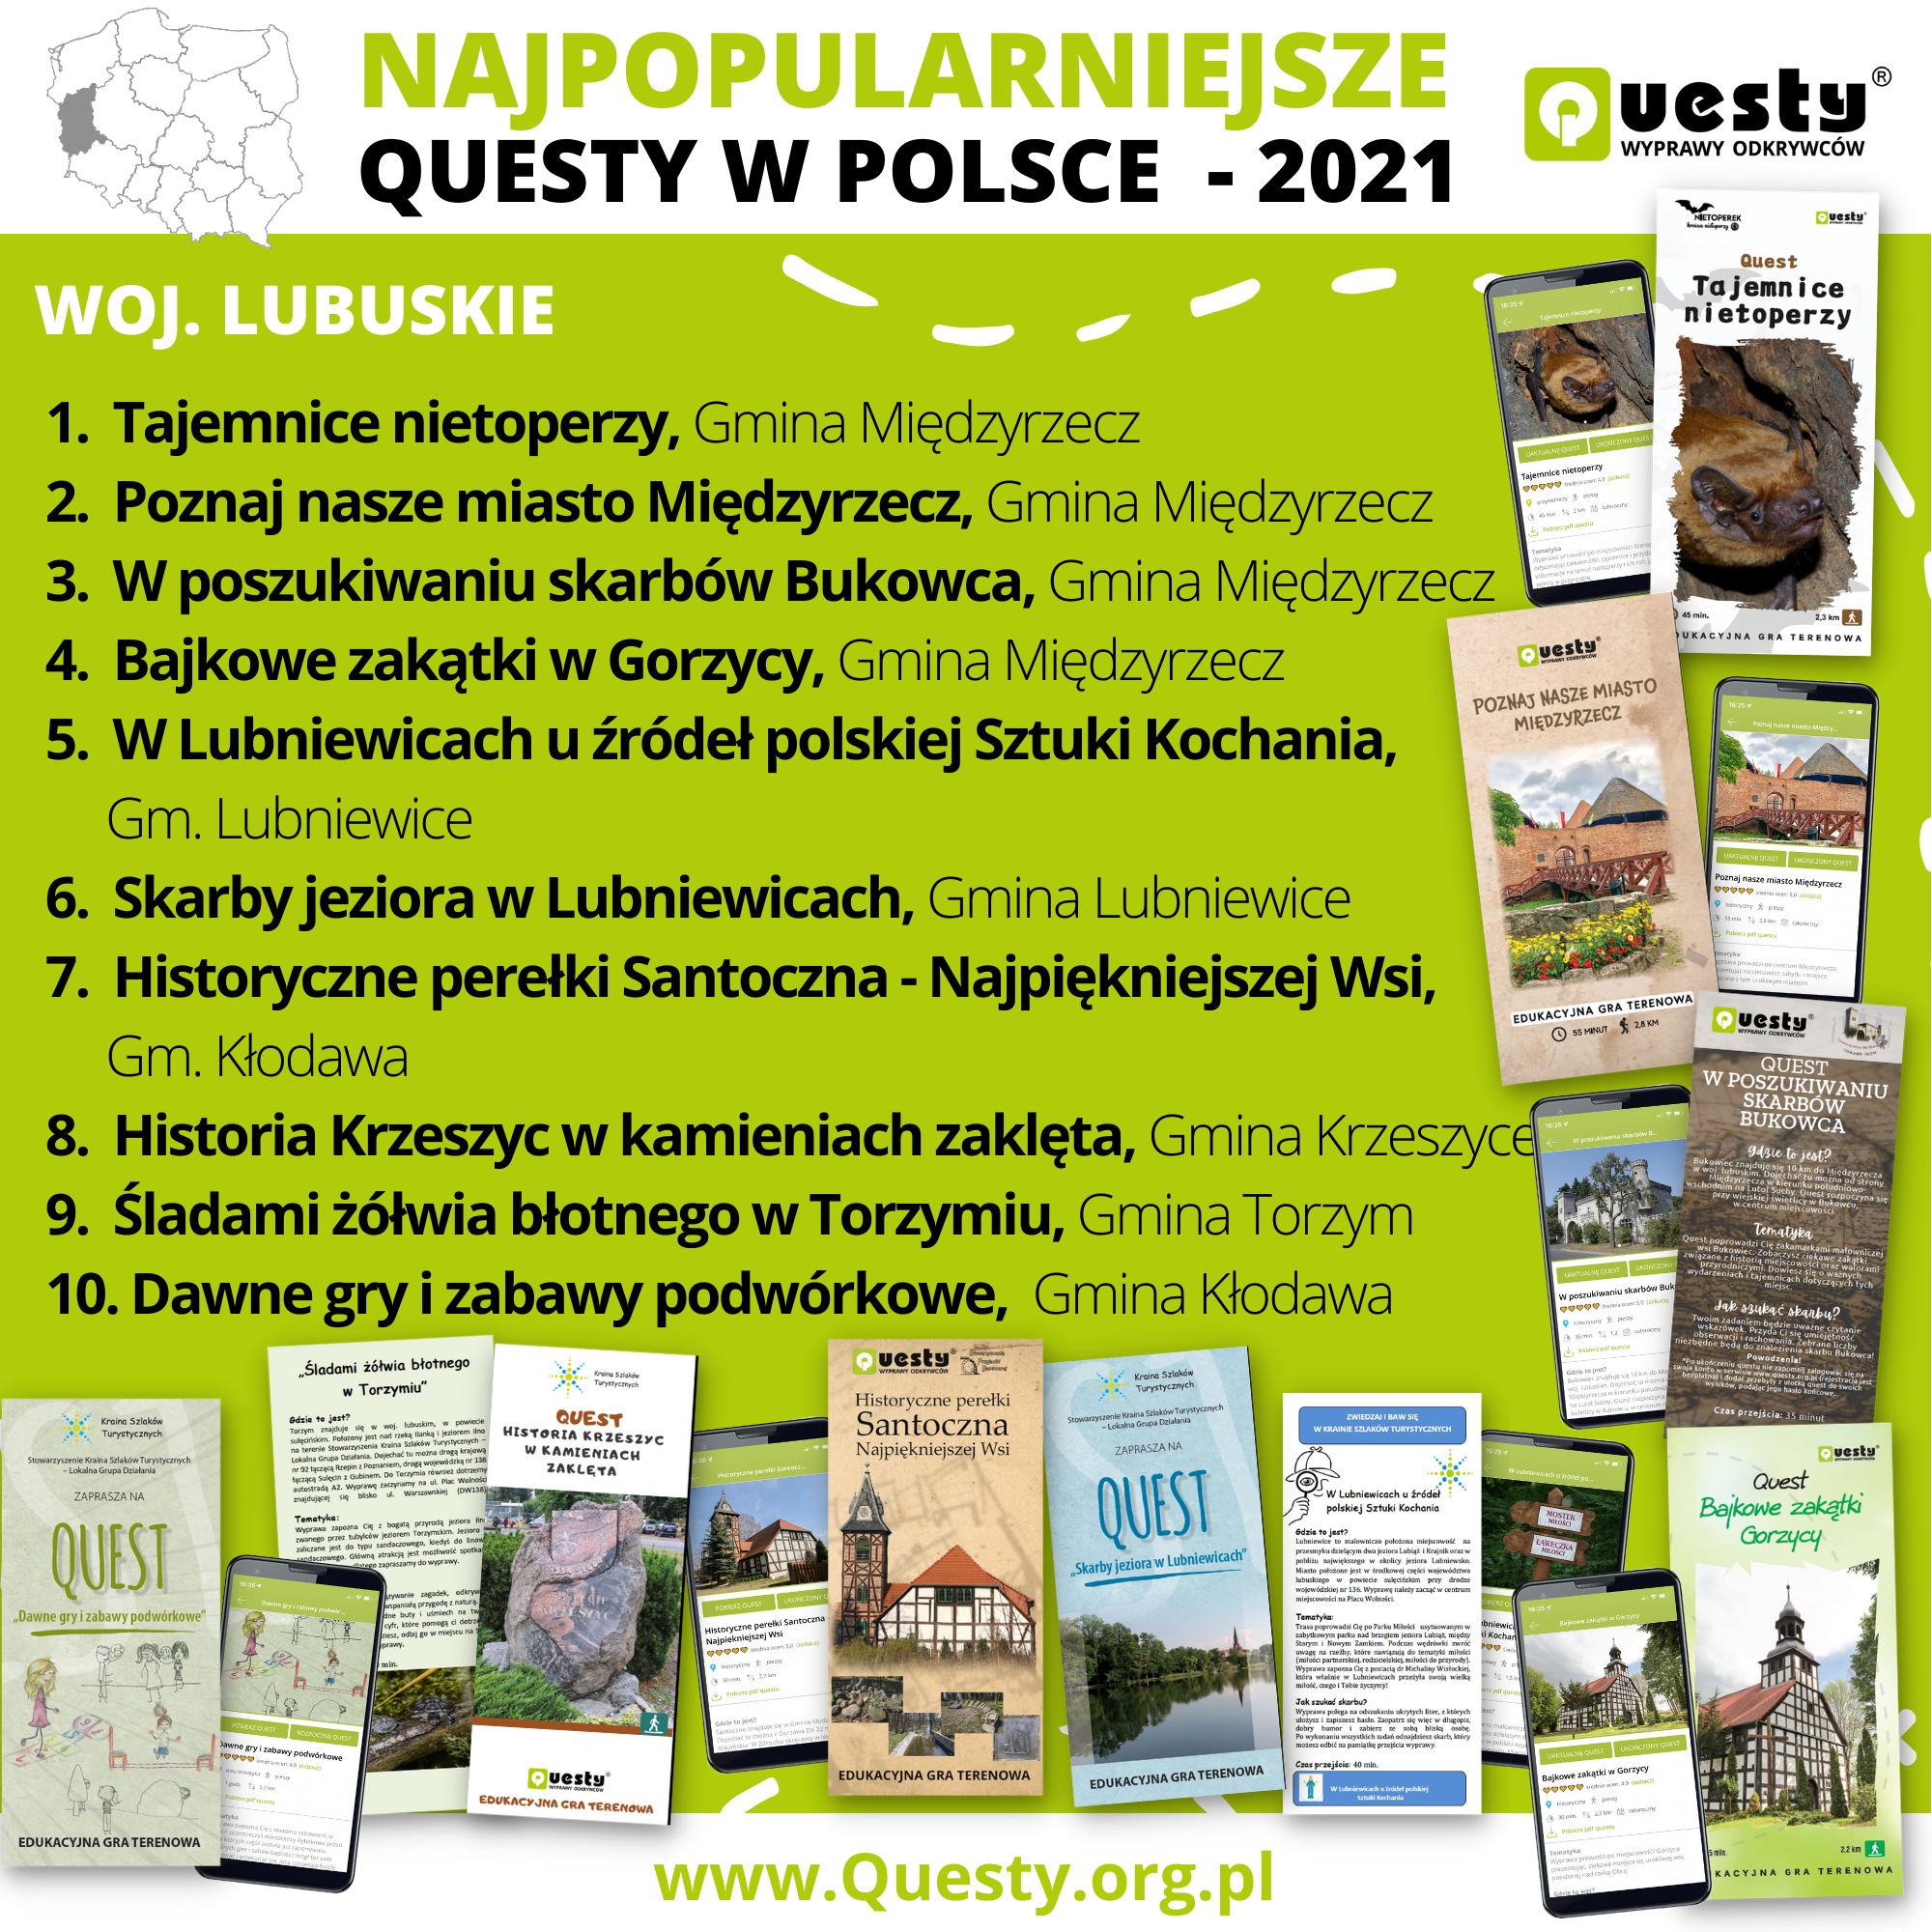 Najpopularniejsze questy w Polsce 2021 - woj. lubuskie